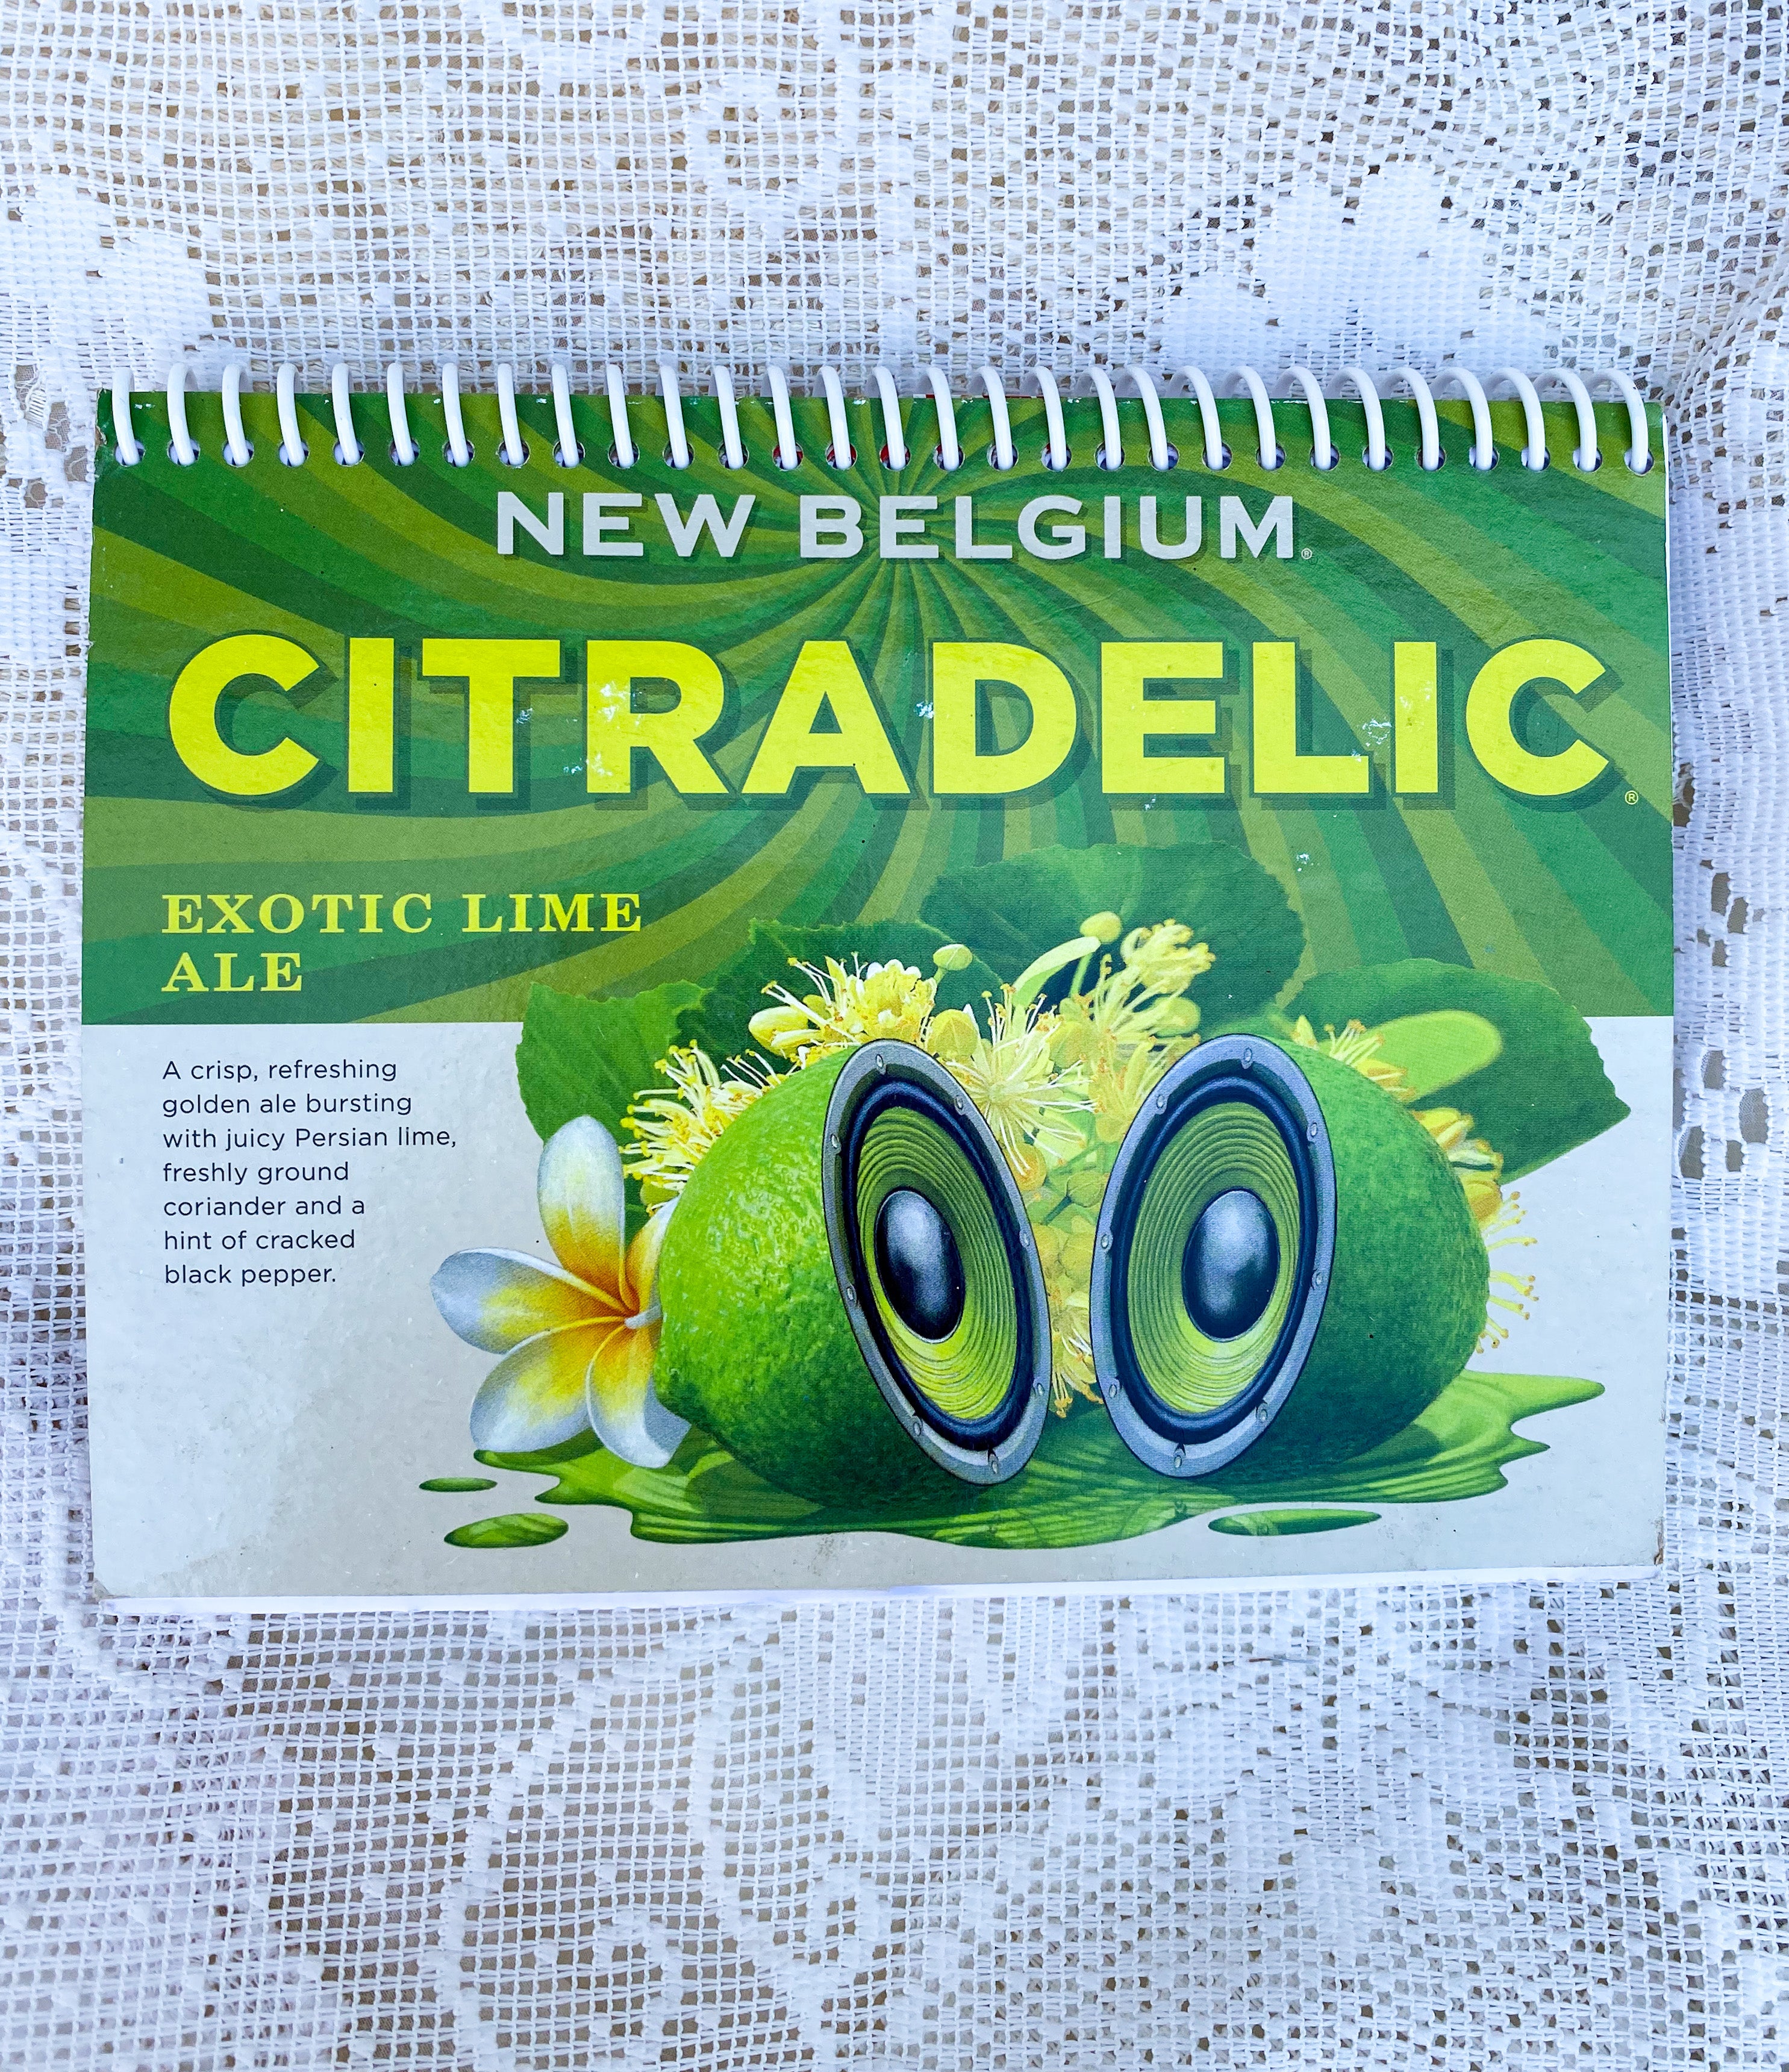 New Belgium Citradelic Recycled Beer Carton Notebook